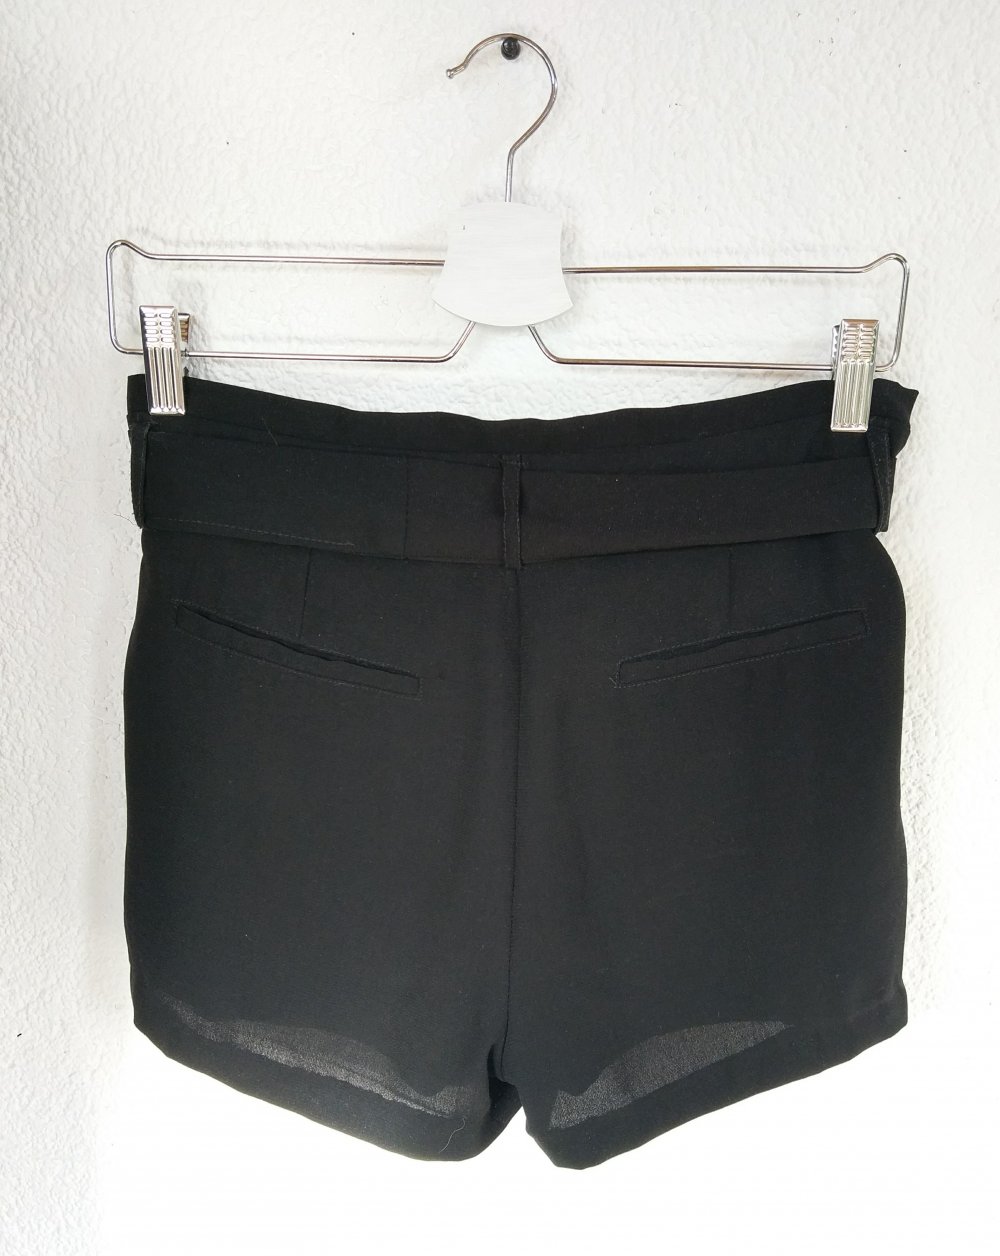 Schwarze Shorts/ Paperbag Hose von Amisu Größe 36/38